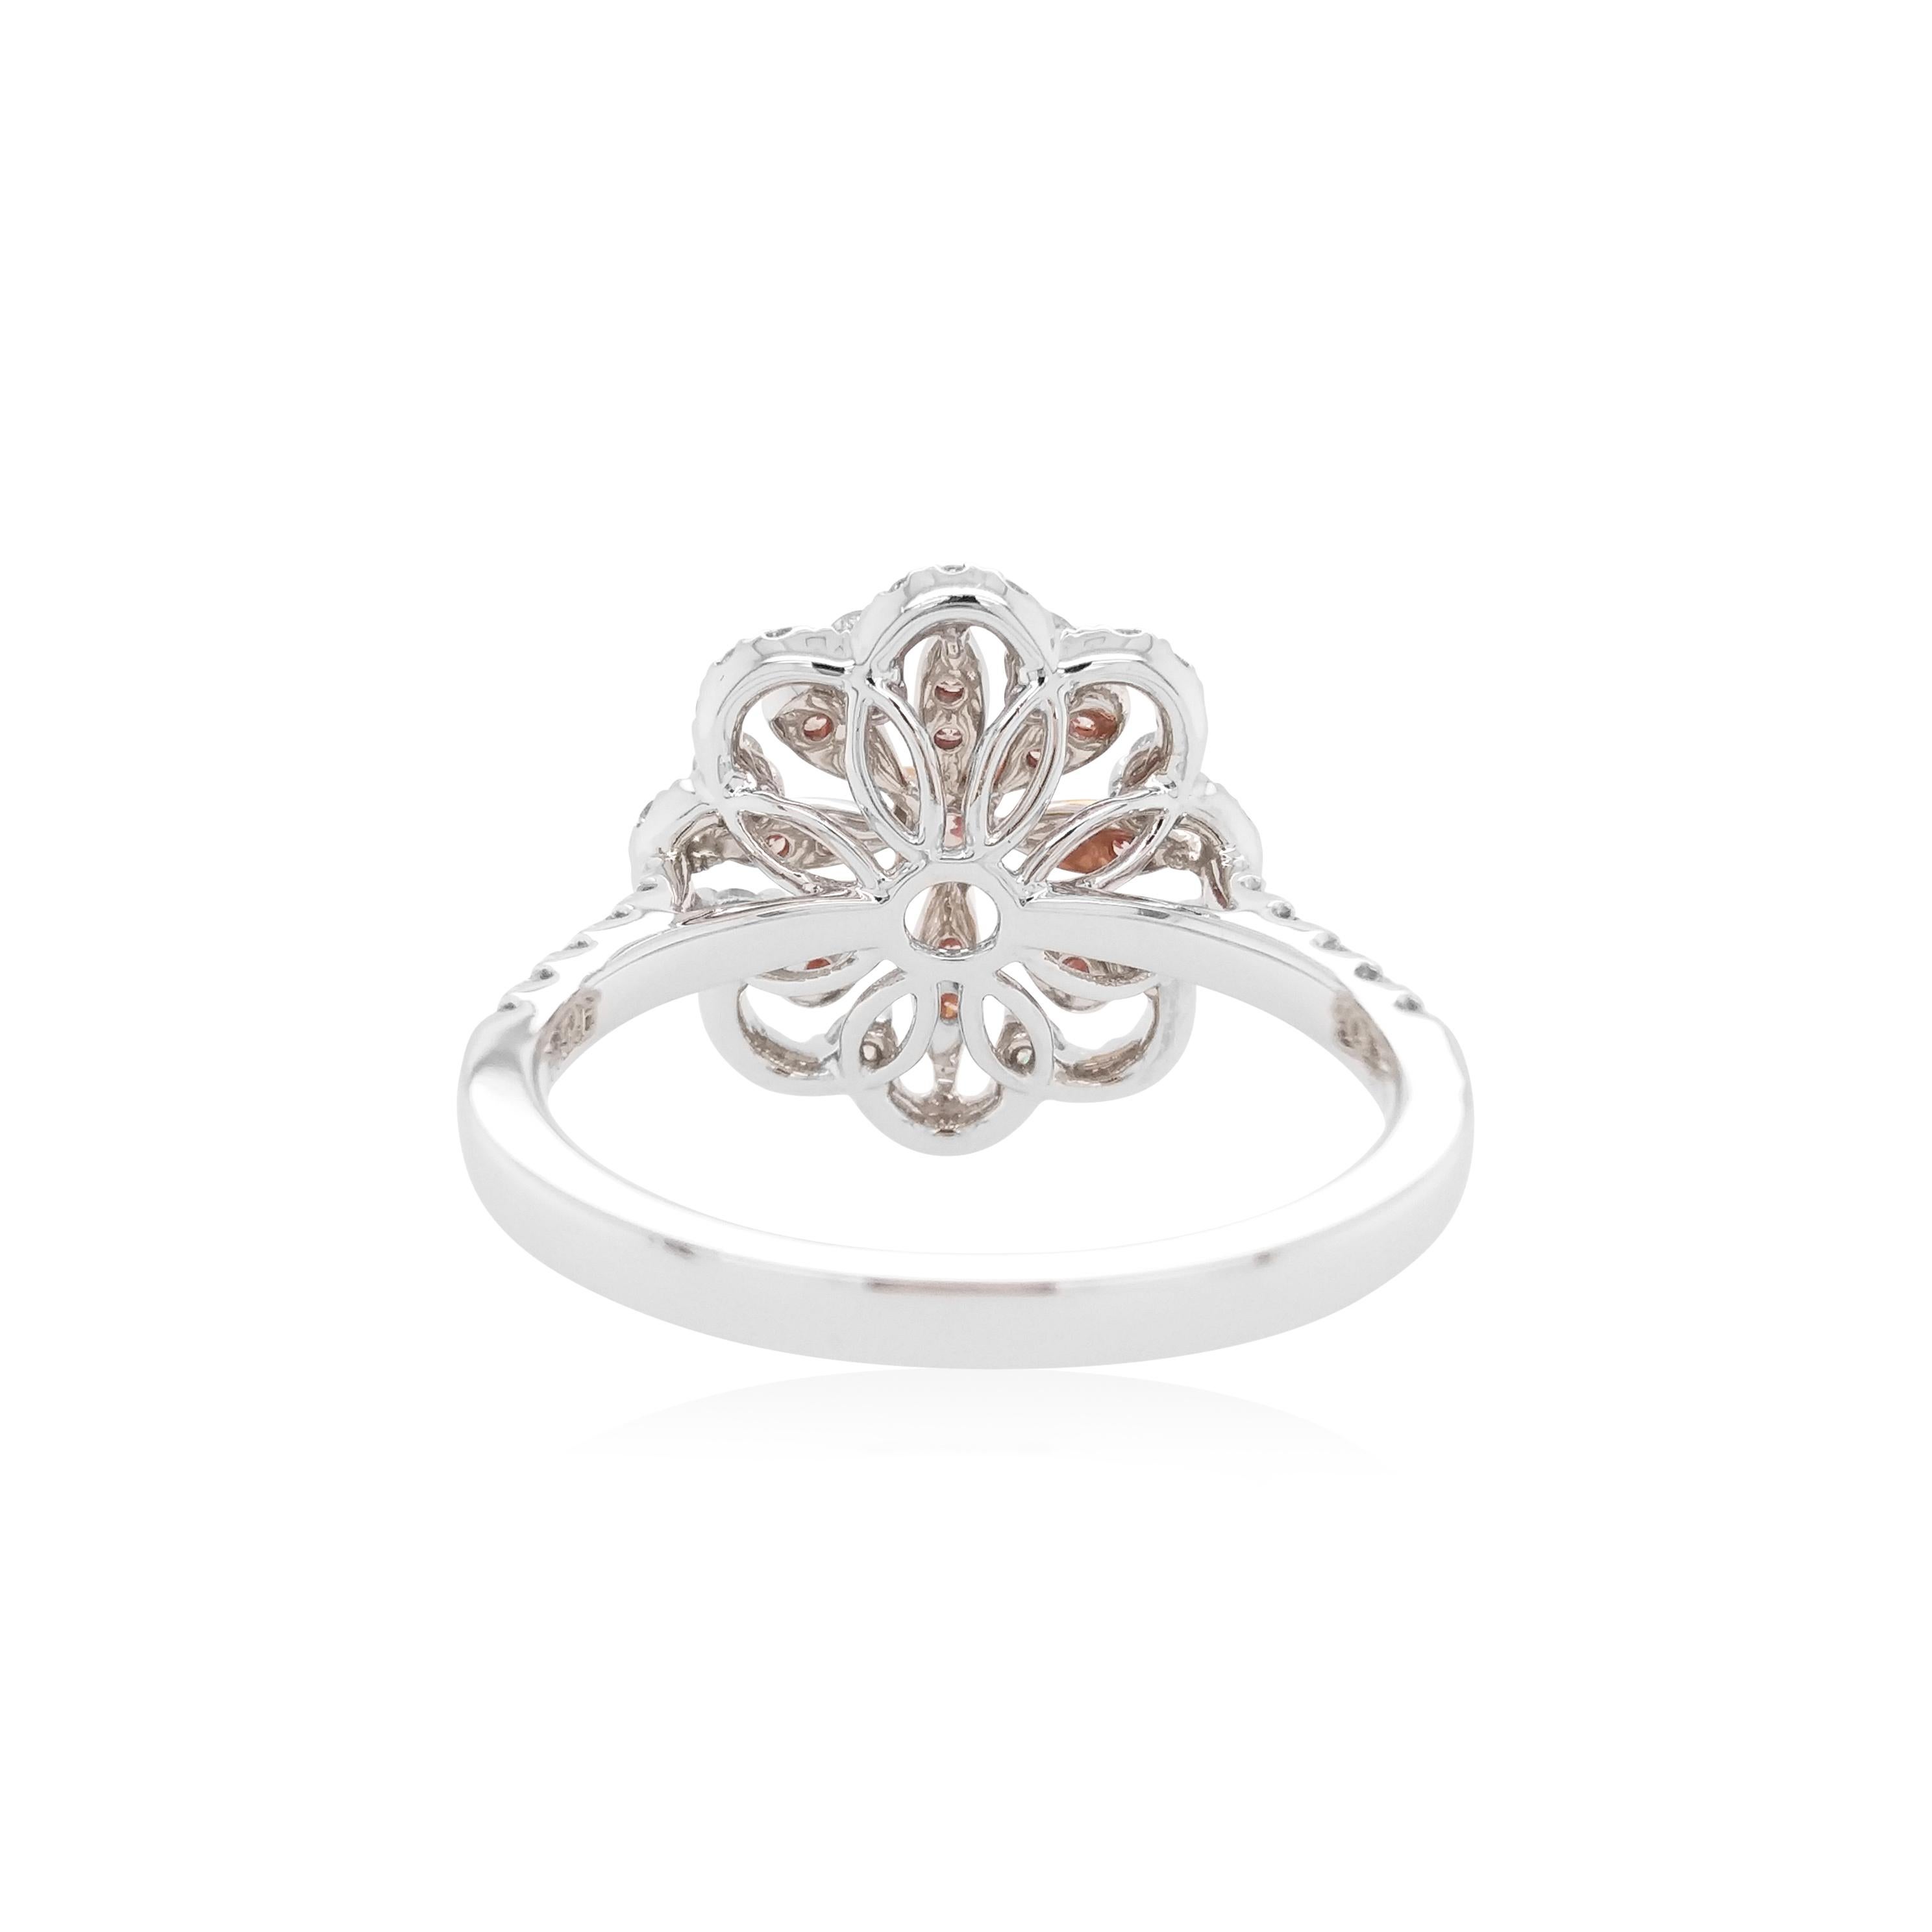 Cette bague unique en forme de fleur présente des diamants naturels roses Argyle au cœur du design. La couleur riche de ces diamants est parfaitement mise en valeur par le délicat motif floral en platine, complété par une combinaison de diamants